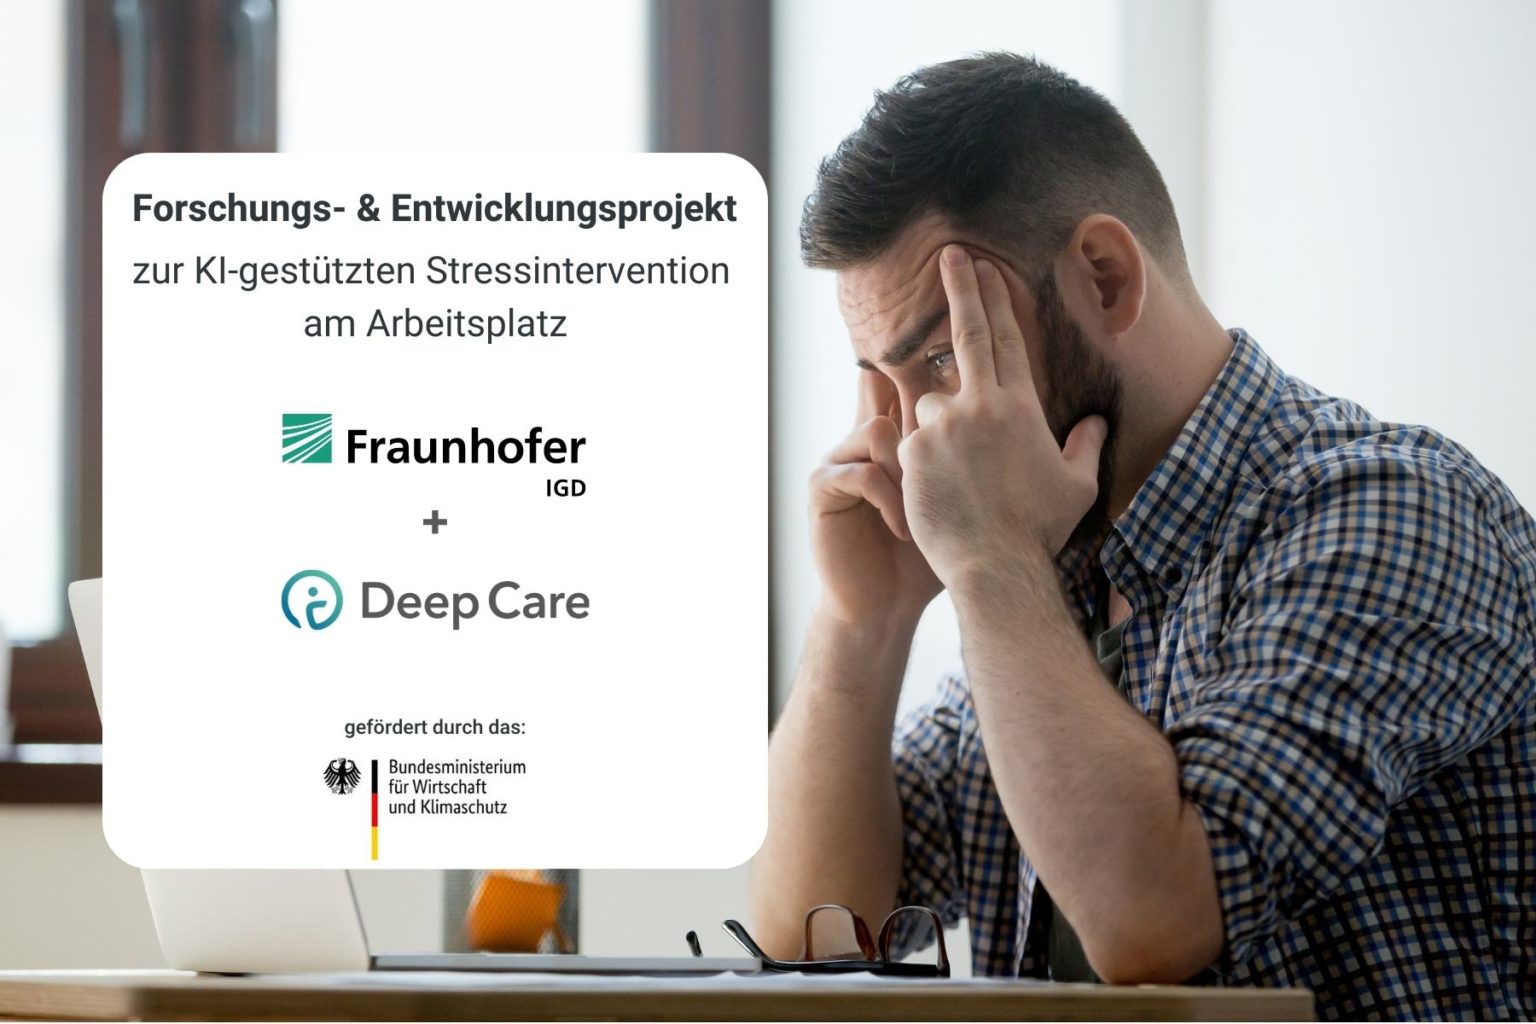 Forschungs- & Entwicklungsprojekt Fraunhofer IGD und Deep Care